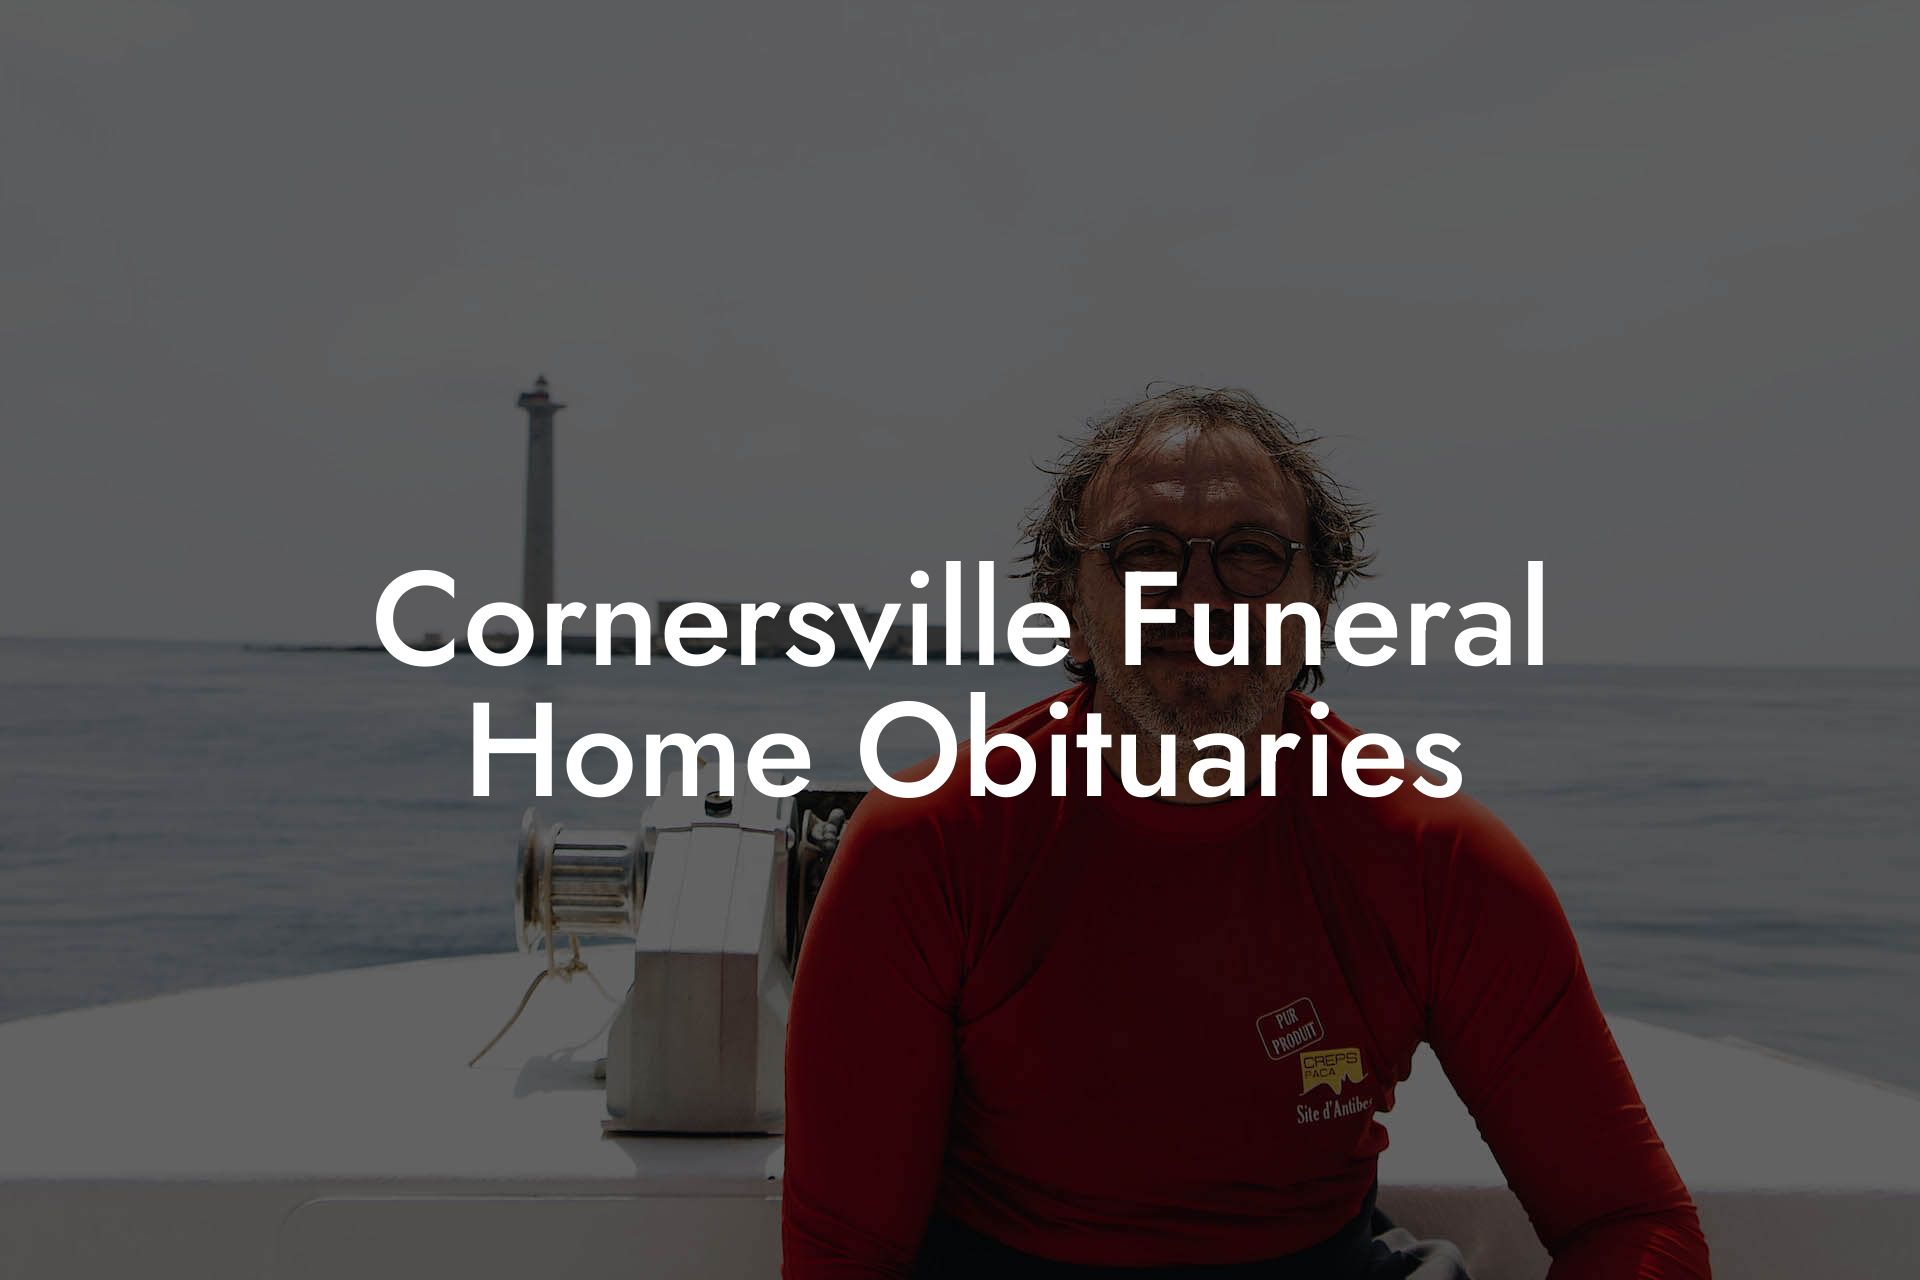 Cornersville Funeral Home Obituaries